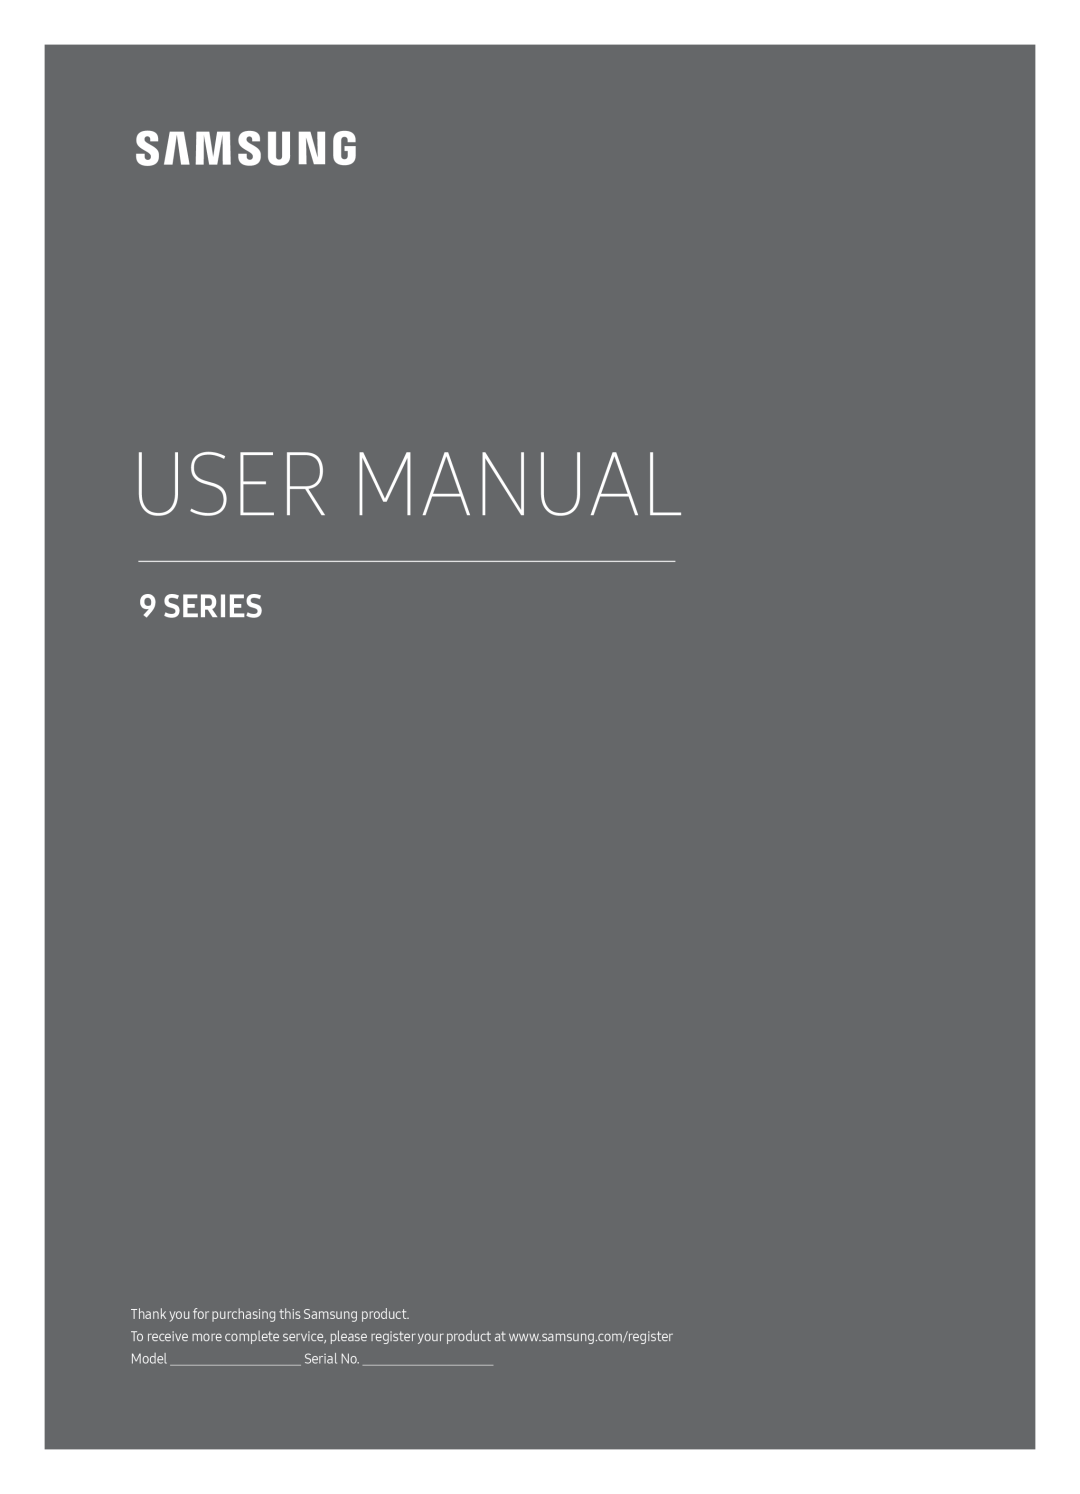 Samsung UE65MU9000TXZG, UE65MU9009TXZG, UE55MU9009TXZG, UE49MU9009TXZG, UE55MU9000TXZG manual User Manual, Series, Serial No 